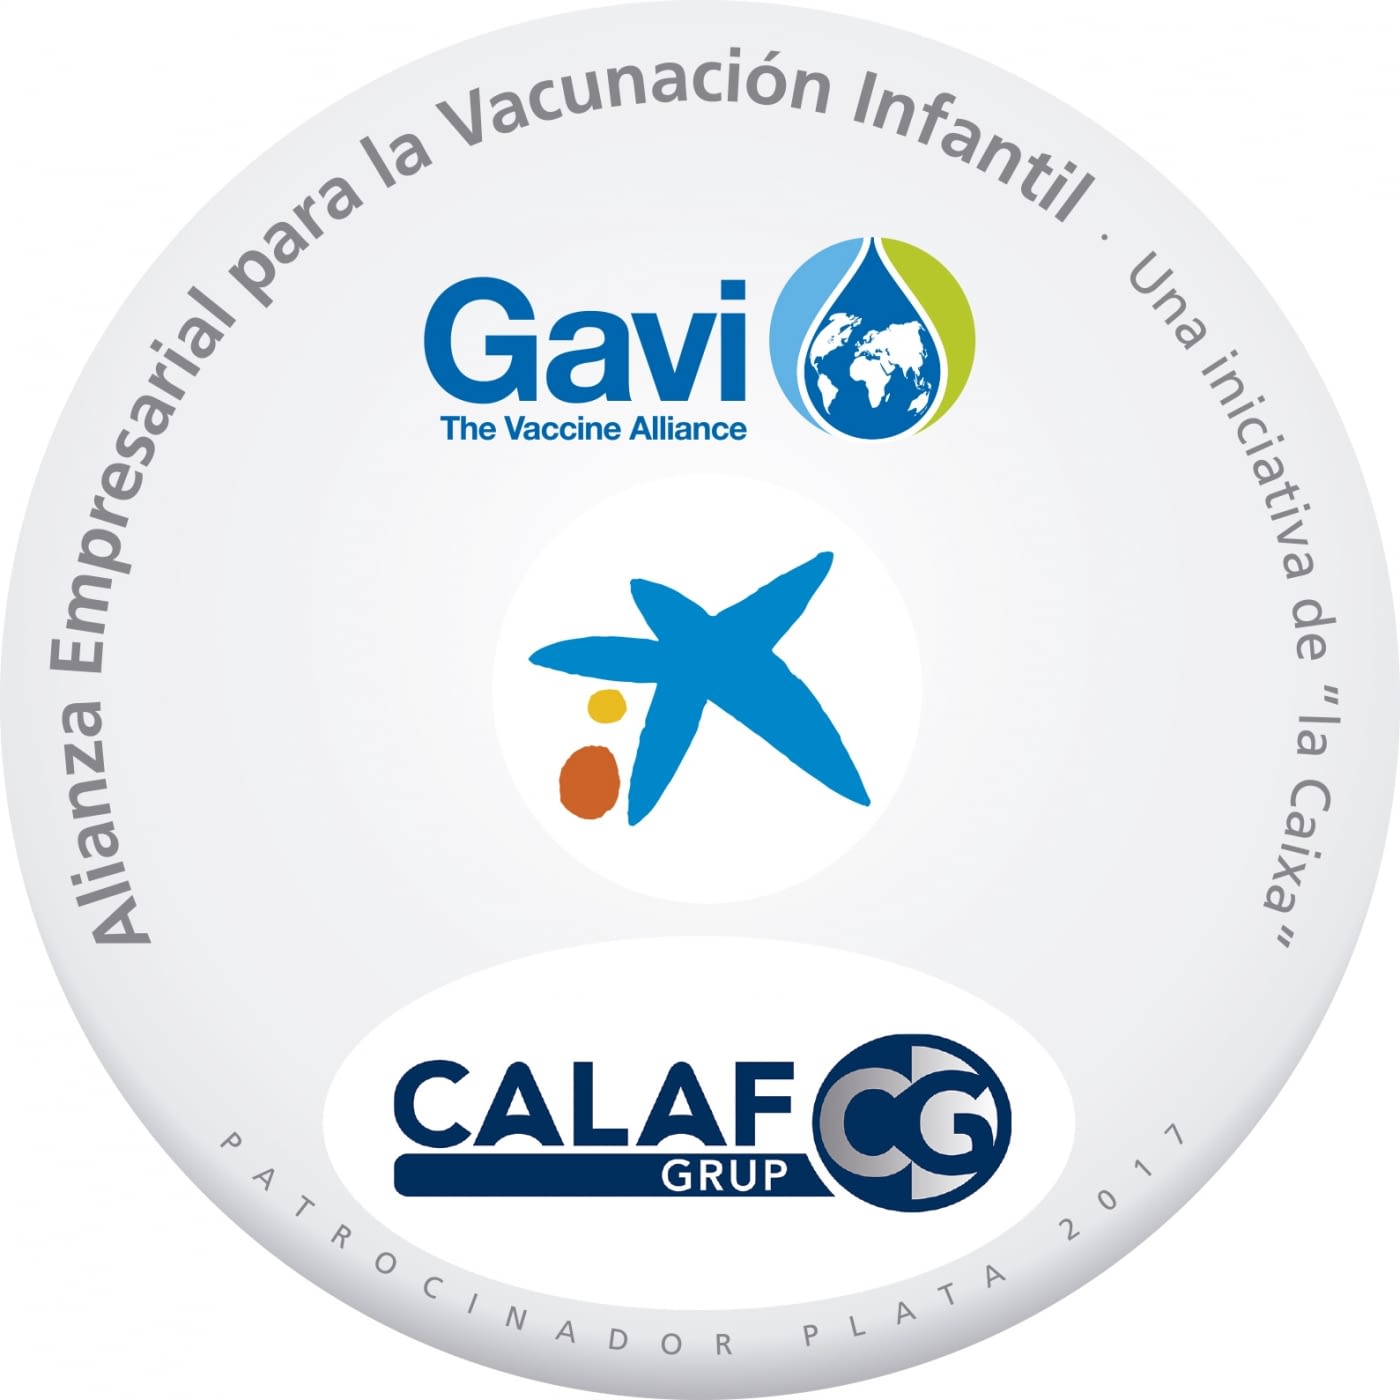 Calaf Grup patrocinadores Plata 2017 de la Alianza Empresarial para la vacunación infantil.